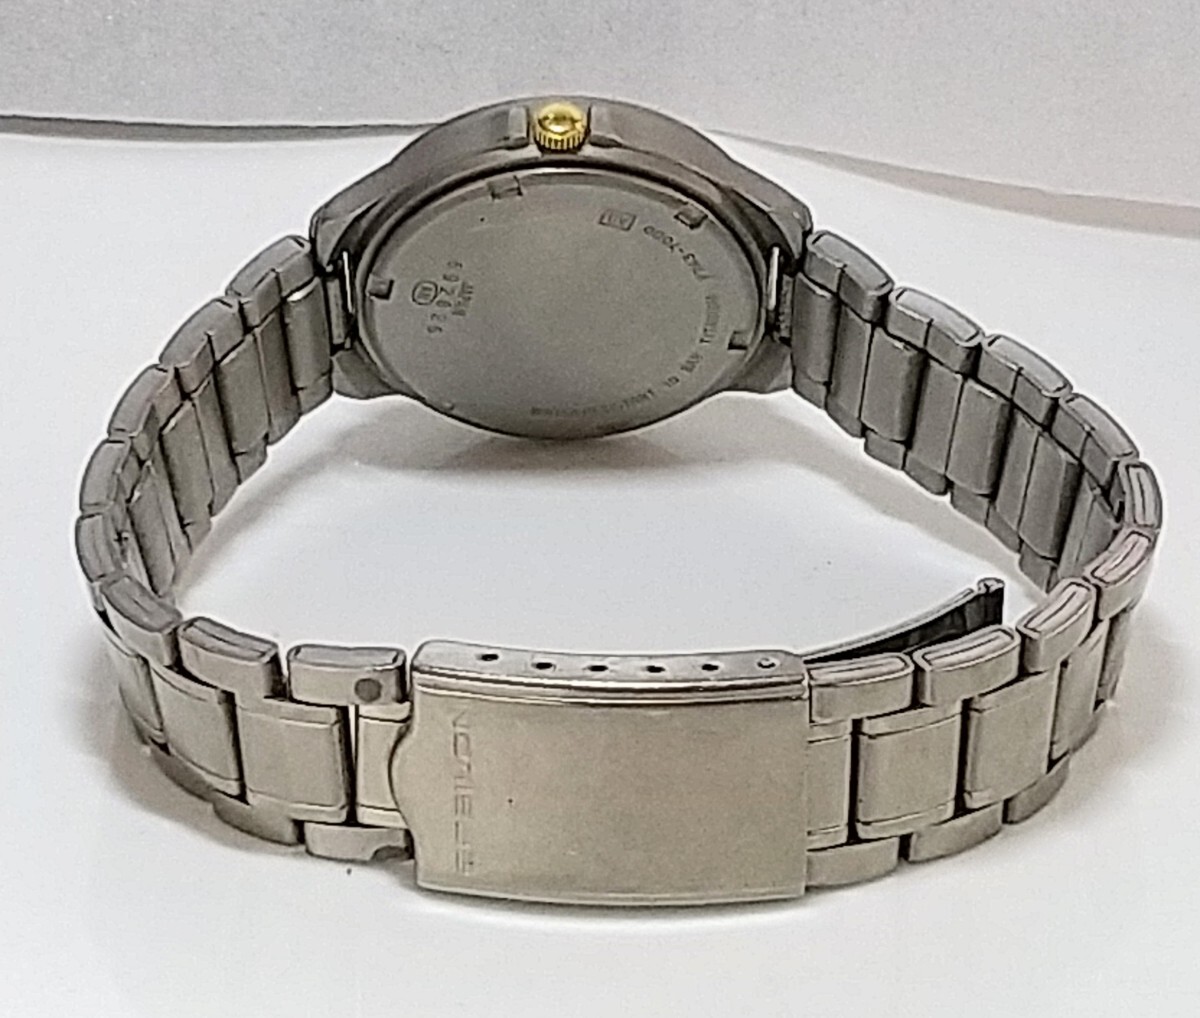  wristwatch SEIKO ALBA EPSON TITANIUM 10BAR V743-7000 cream record original band battery replaced 